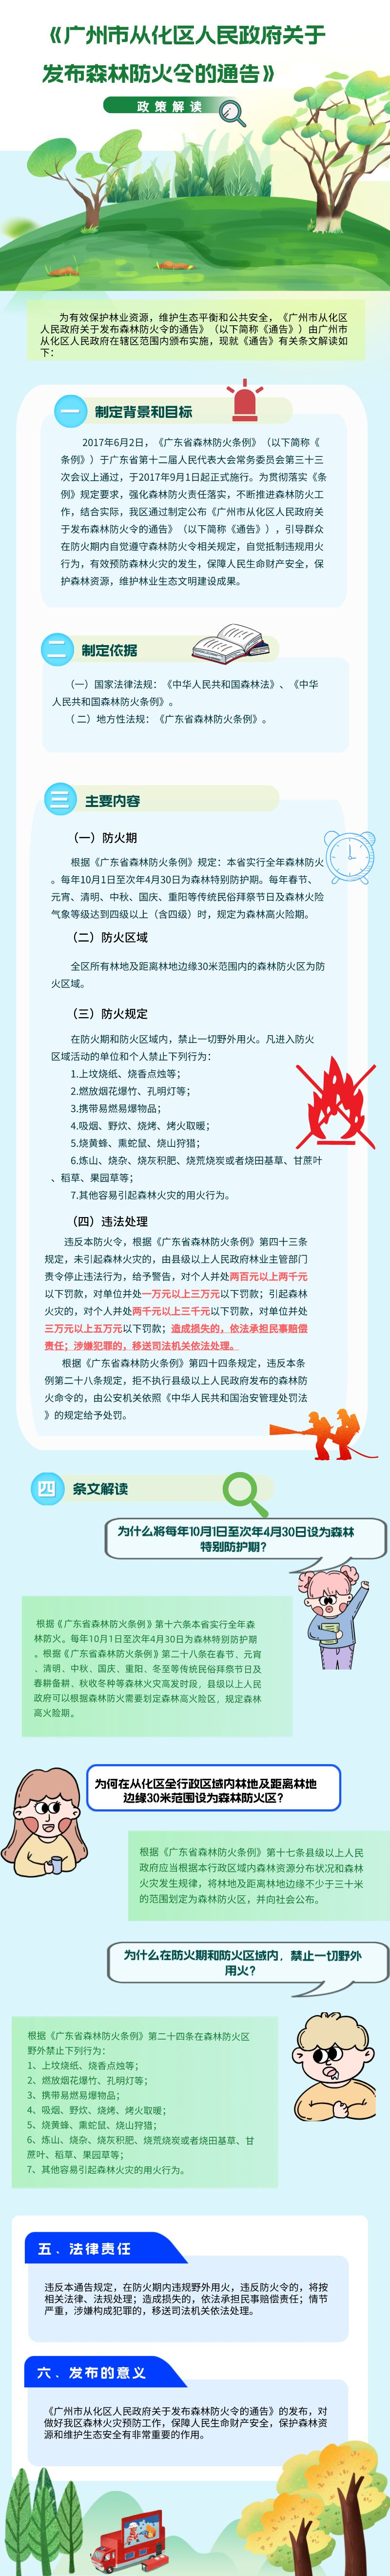 【一图读懂】《广州市从化区人民政府关于发布森林防火令的通告》.png